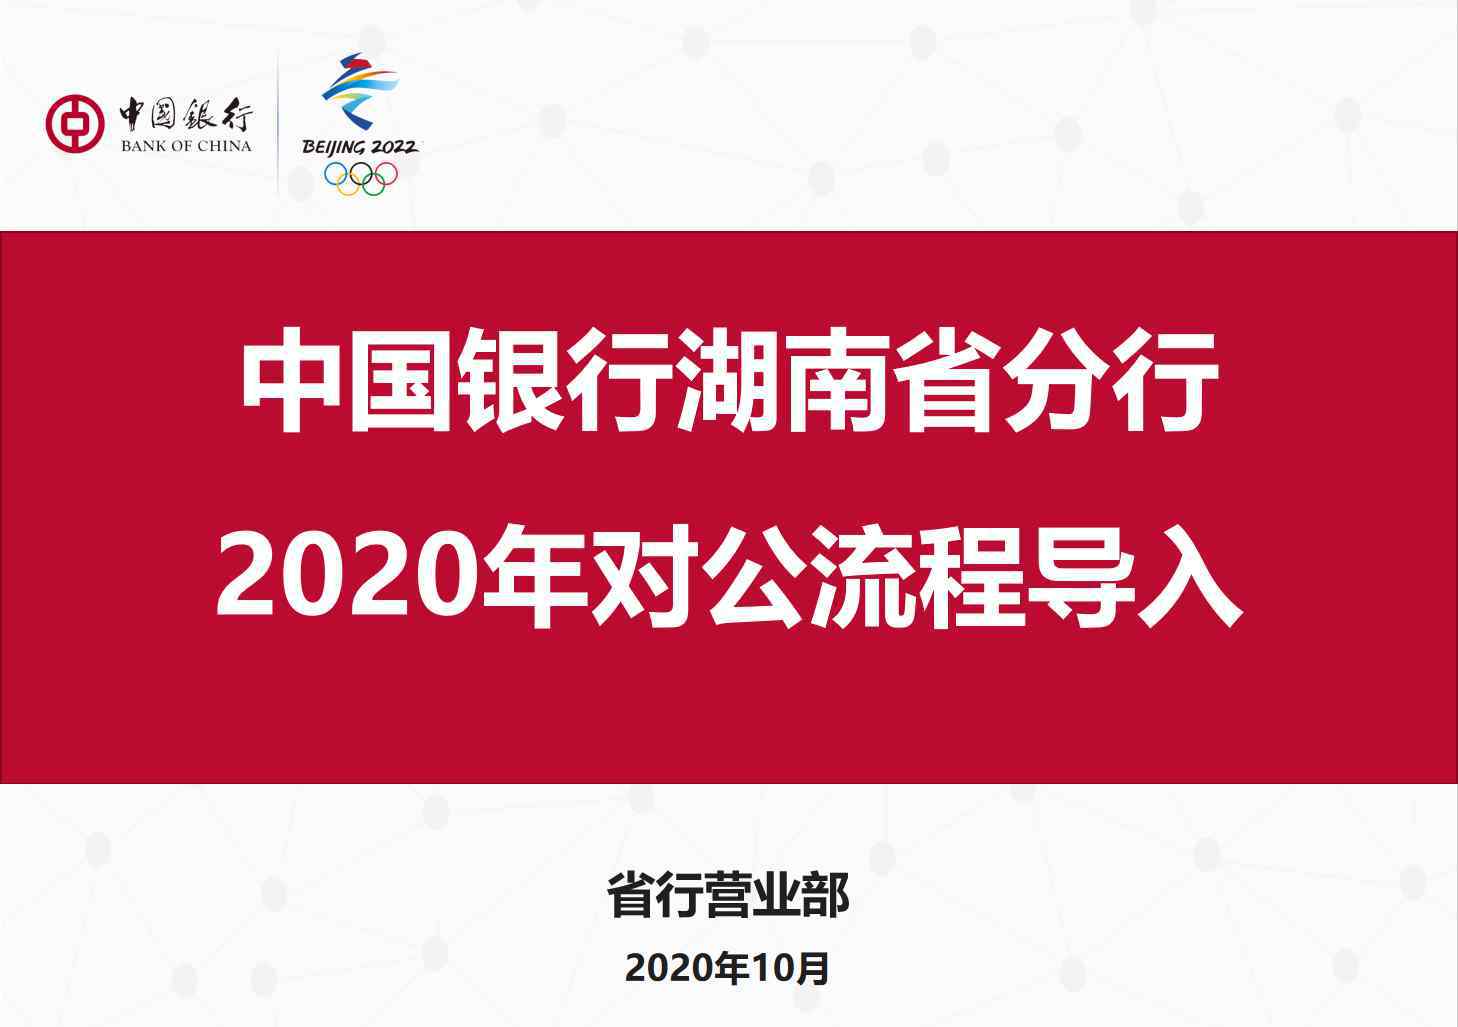 中国银行湖南省分行 中国银行湖南省分行营业部2020年对公流程导入正式开展